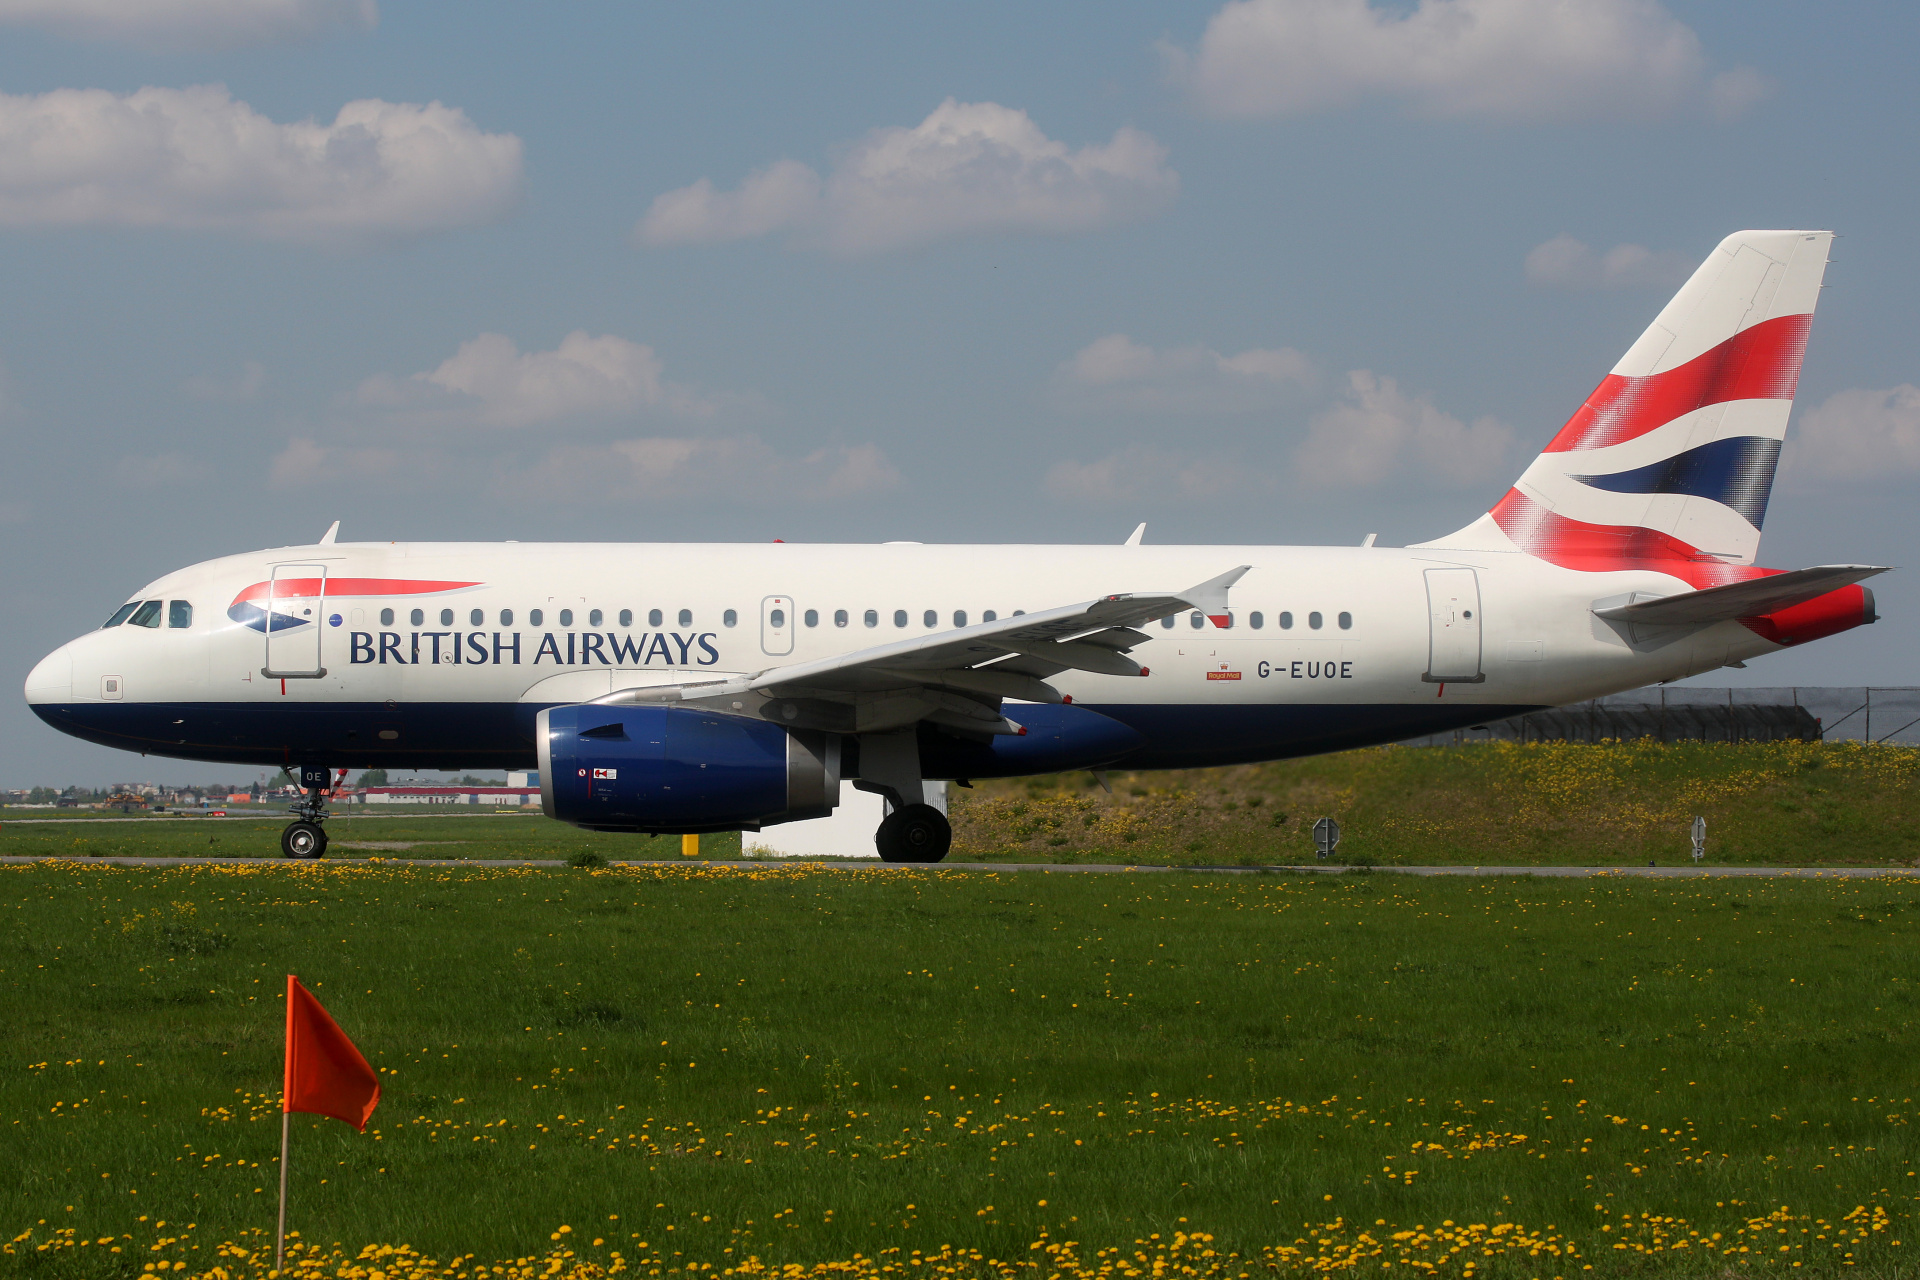 G-EUOE (Aircraft » EPWA Spotting » Airbus A319-100 » British Airways)